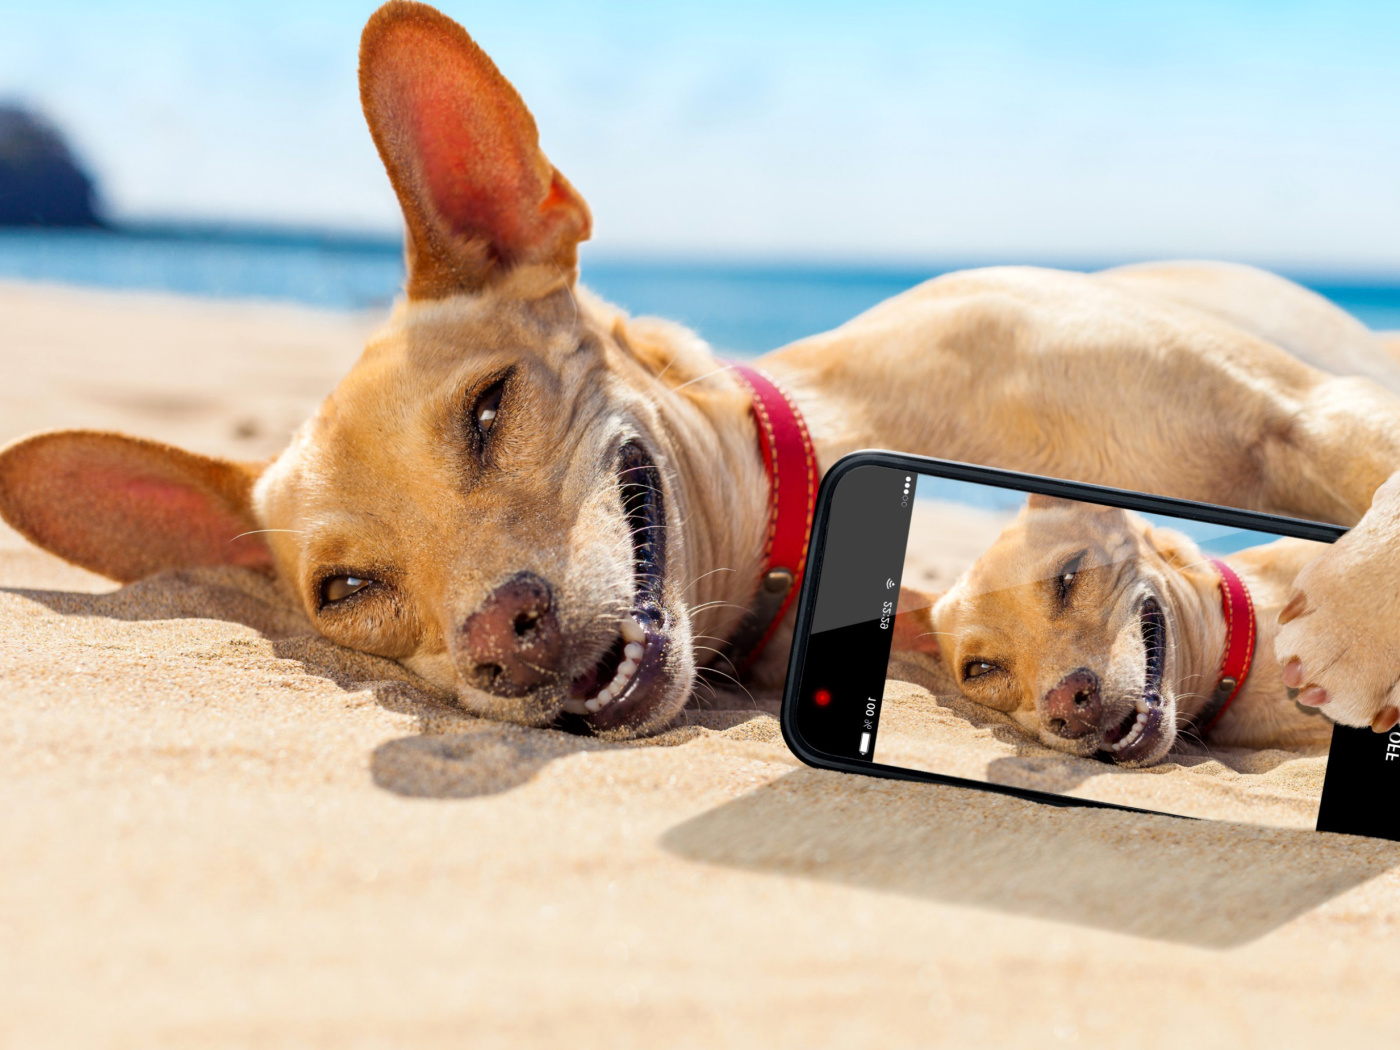 Обои Dog beach selfie on iPhone 7 1400x1050